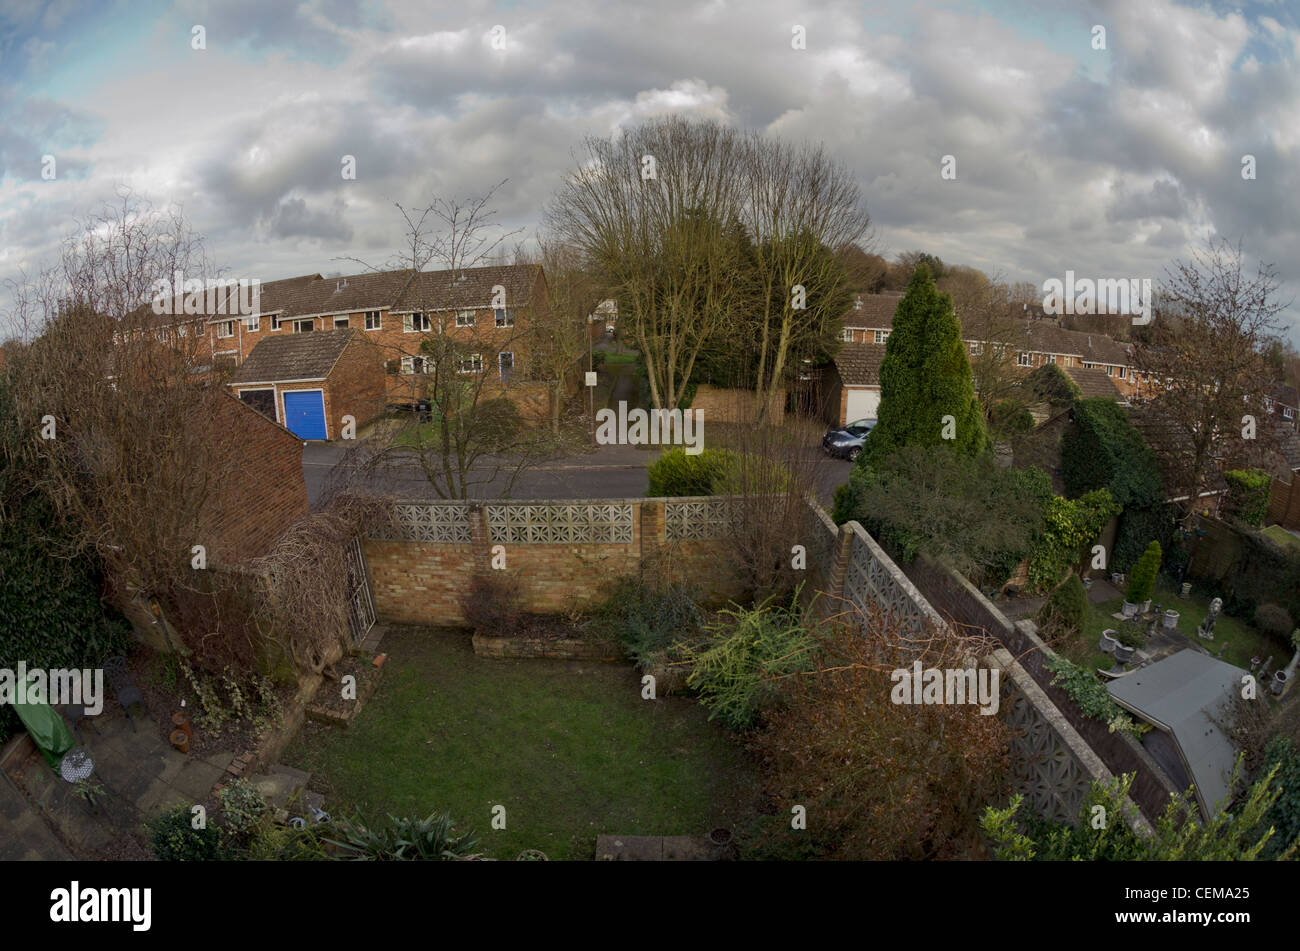 Un amplio ángulo de visión de la casa y jardines, dentro de una urbanización. Foto de stock